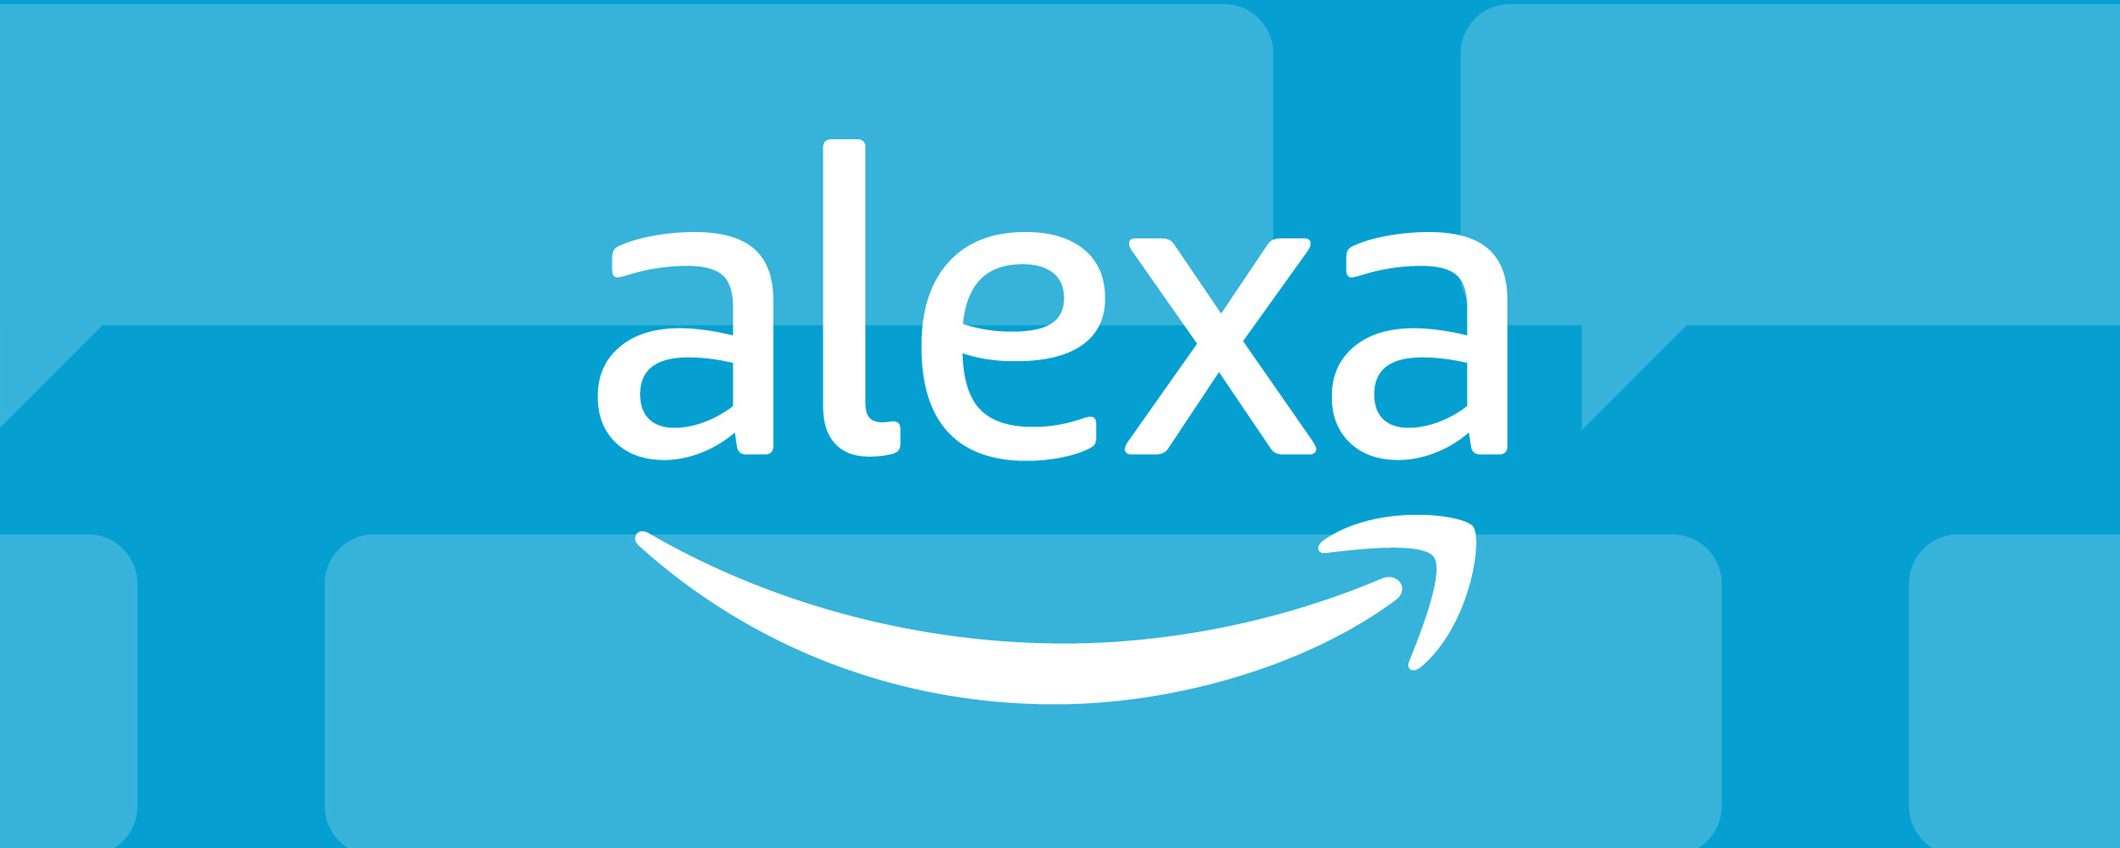 Amazon Alexa Plus: versione a pagamento in arrivo?